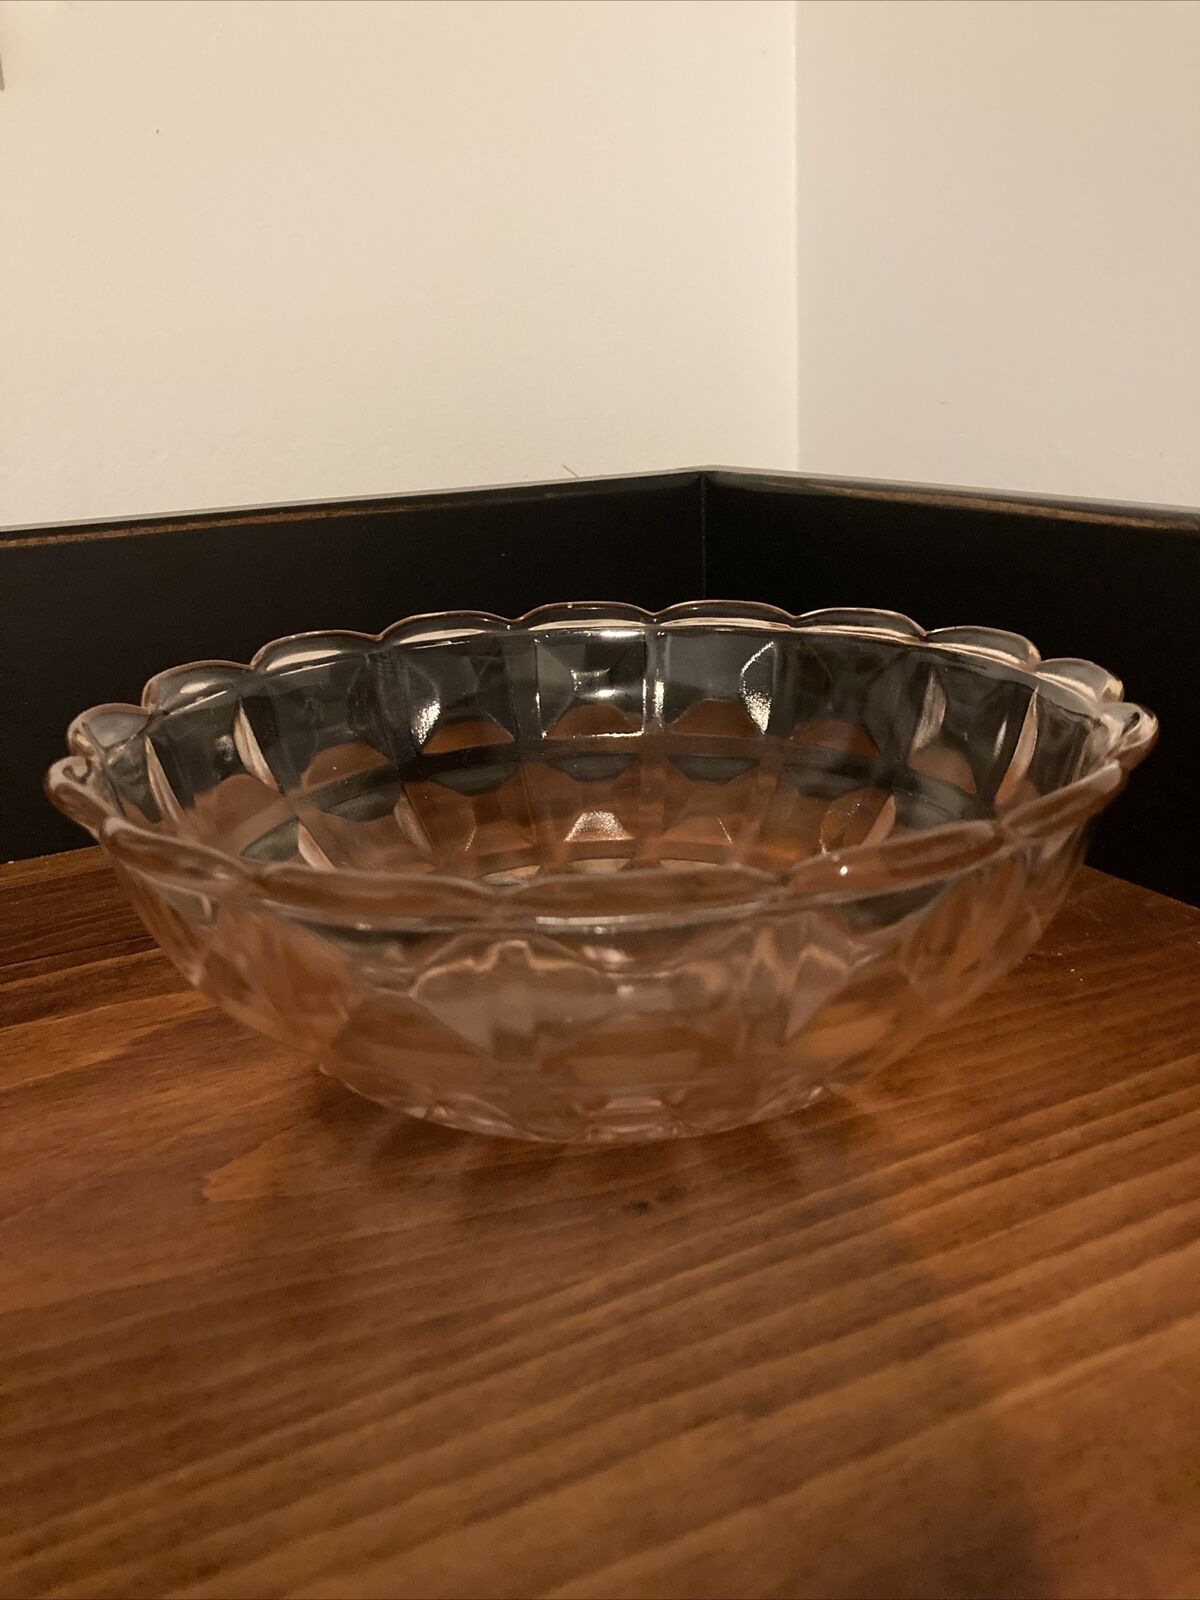 Vintage Depression Glass Serving Bowl - Pink Block Pattern 7”